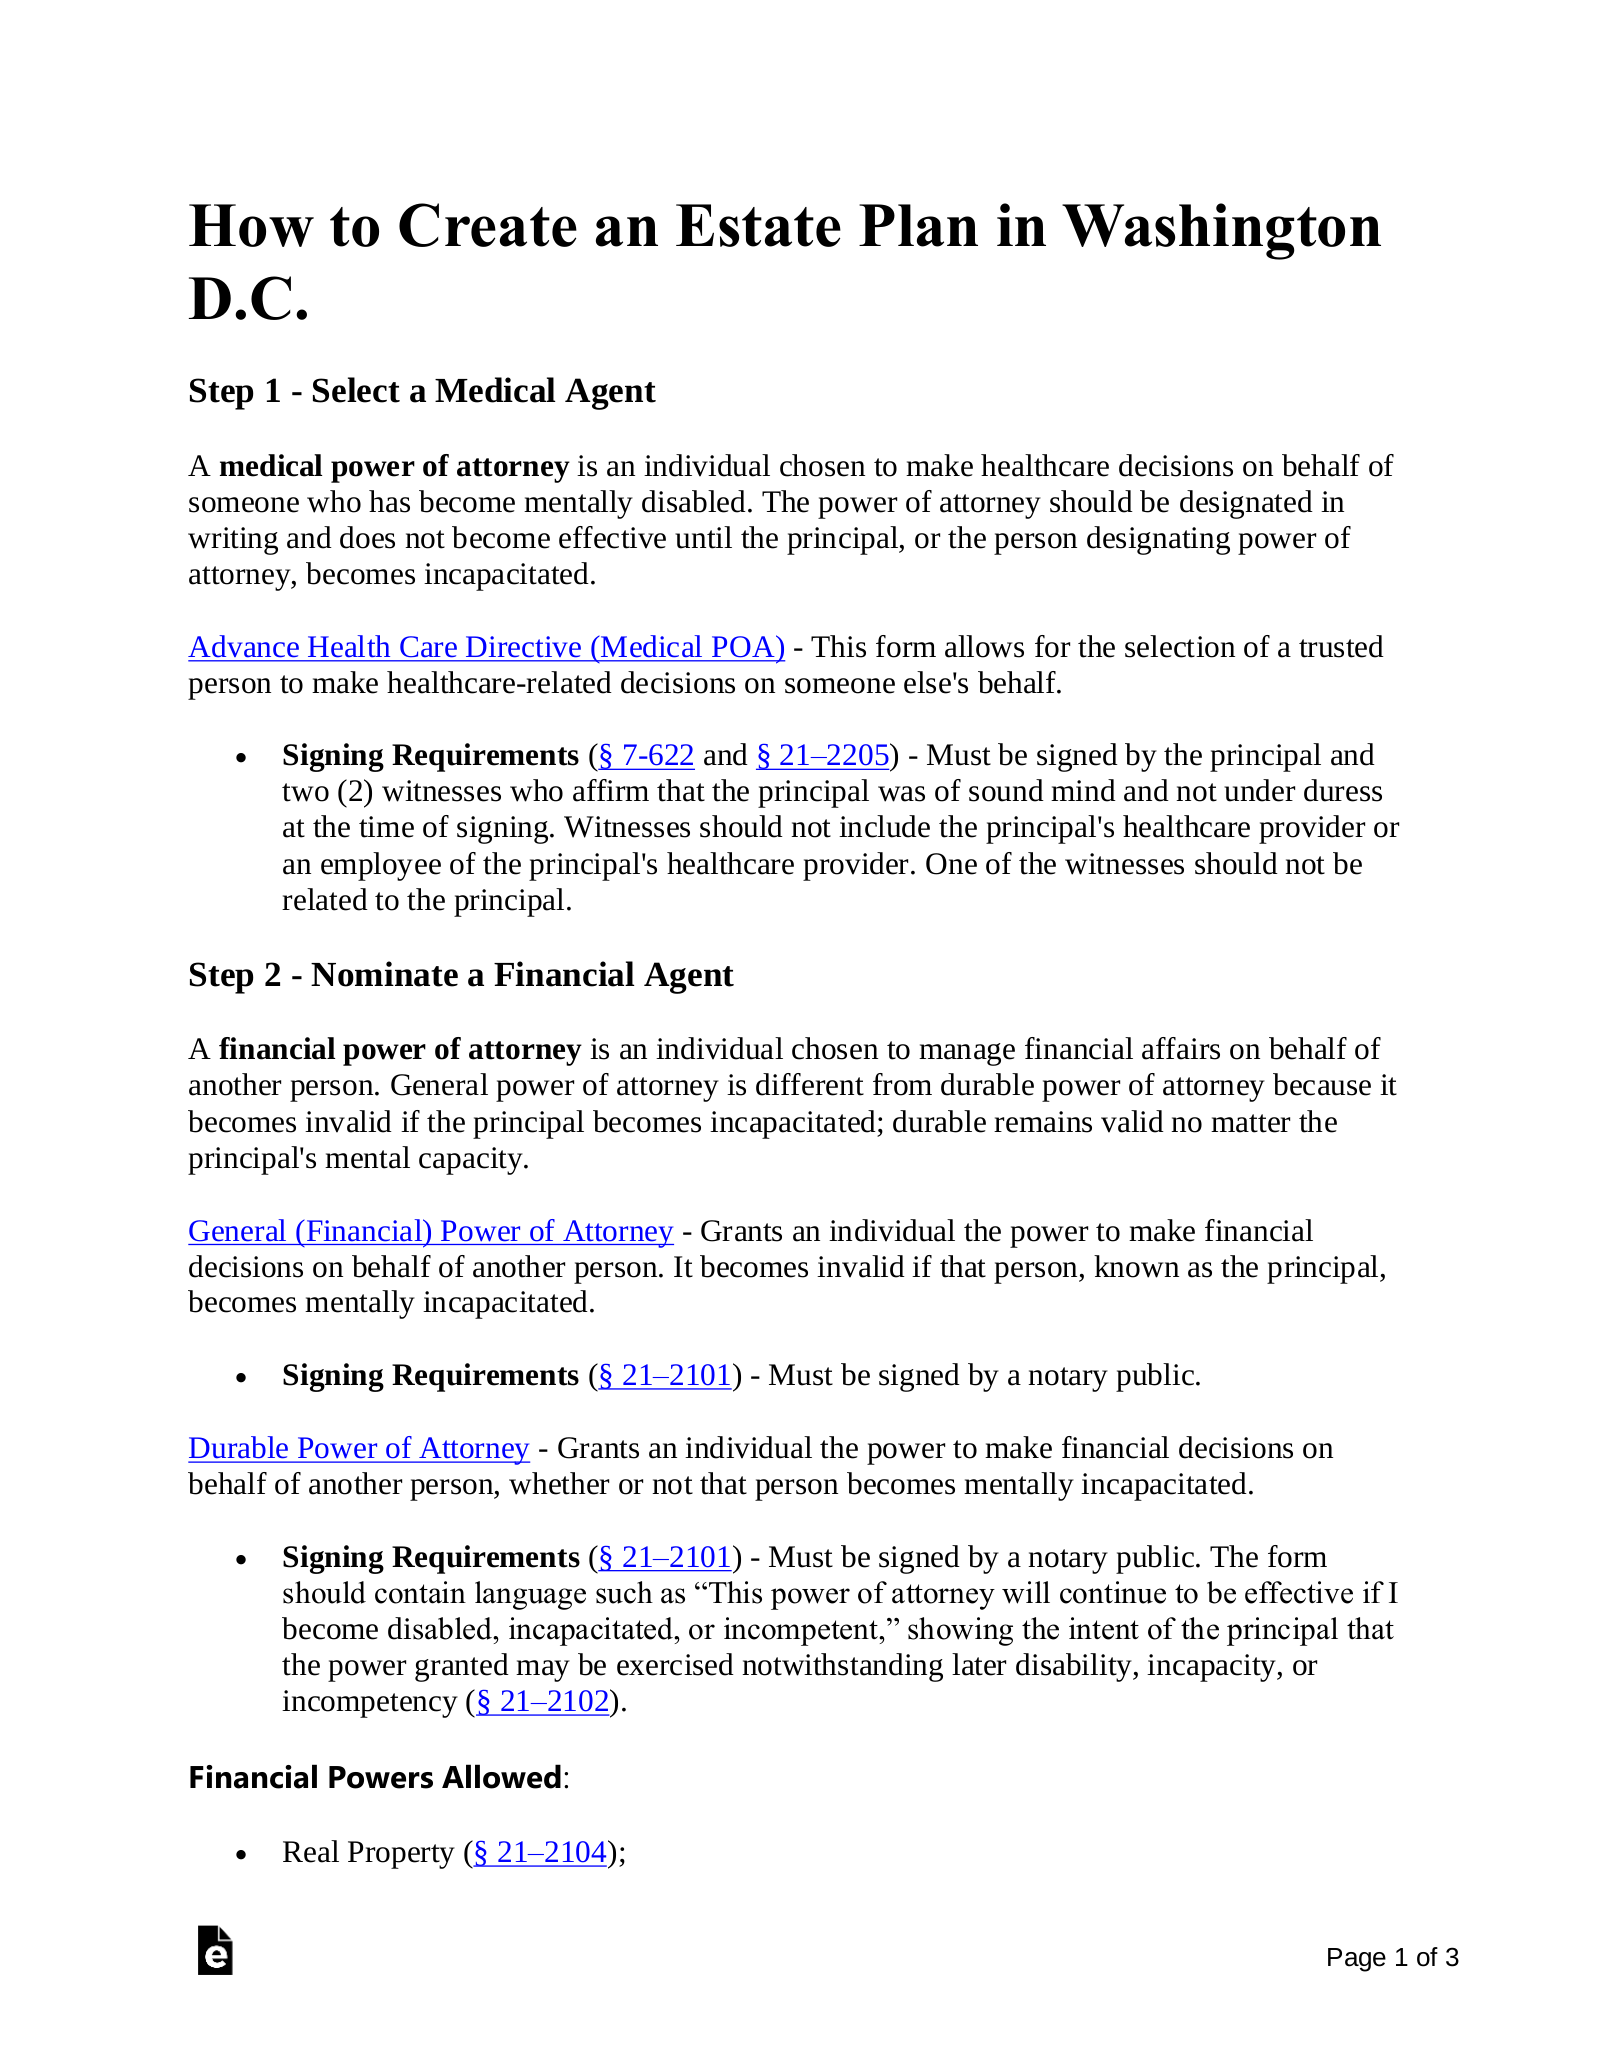 Washington D.C. Estate Planning Checklist